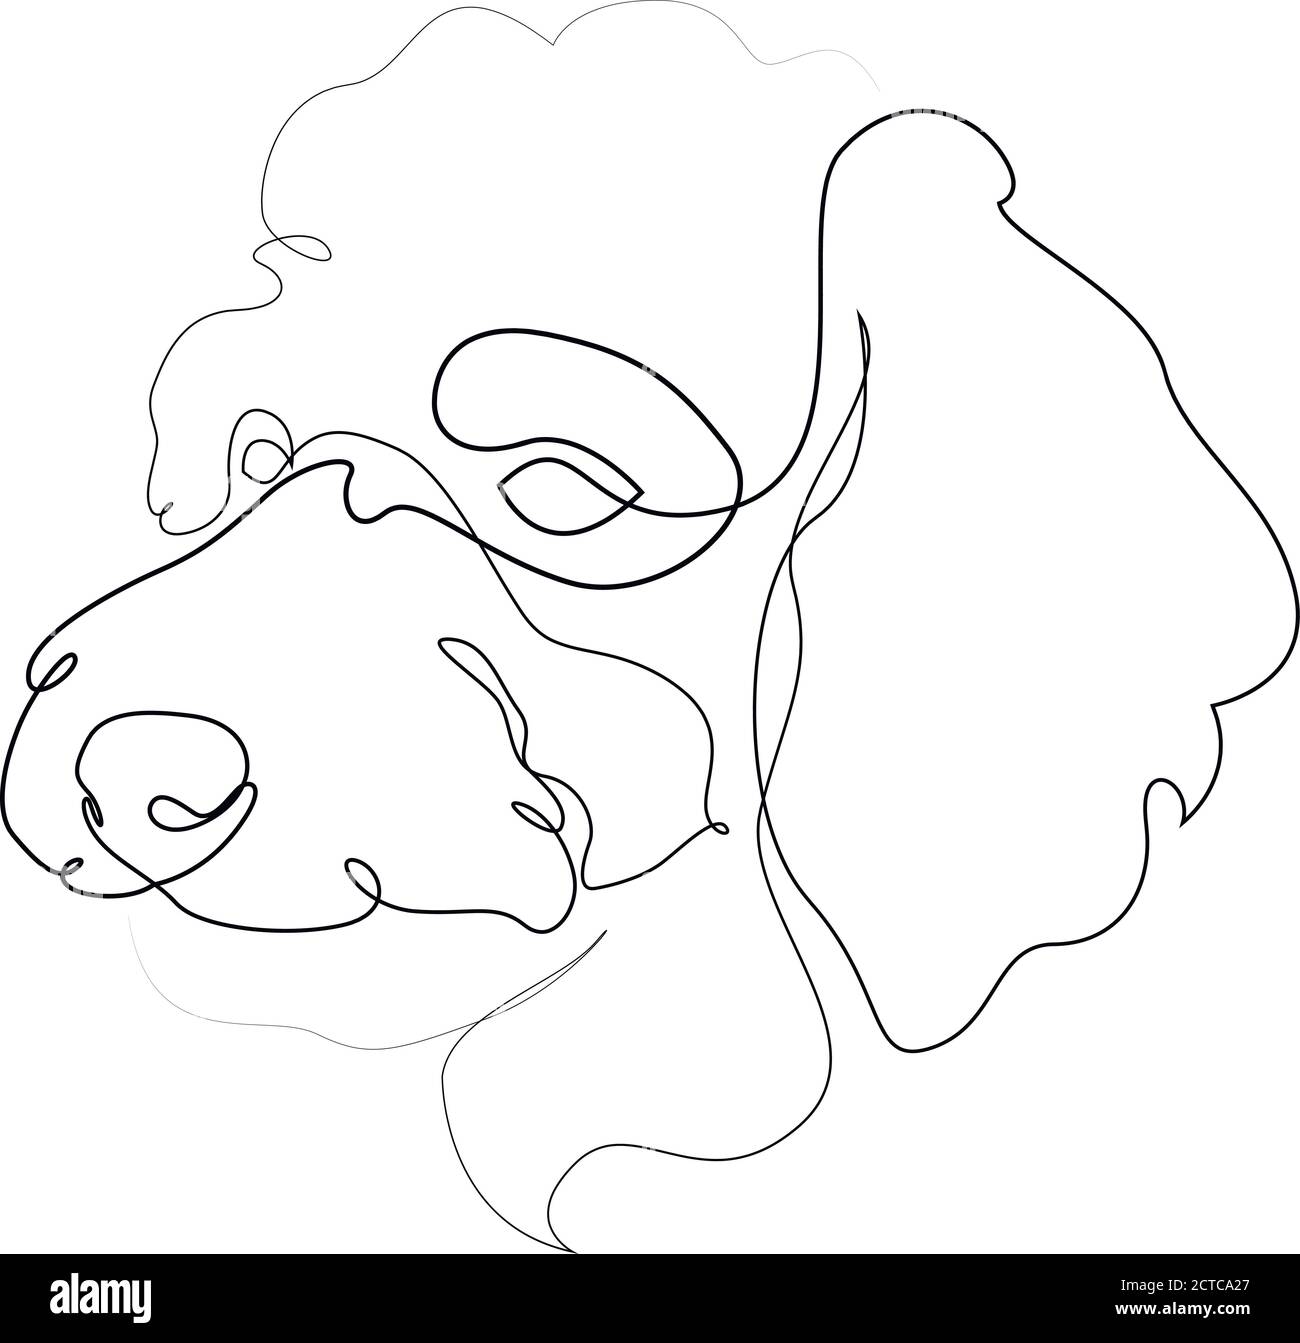 Pudel Vektor Hund Porträt. Durchgehende Linie. Zeichnung der Hundelinie Stock Vektor